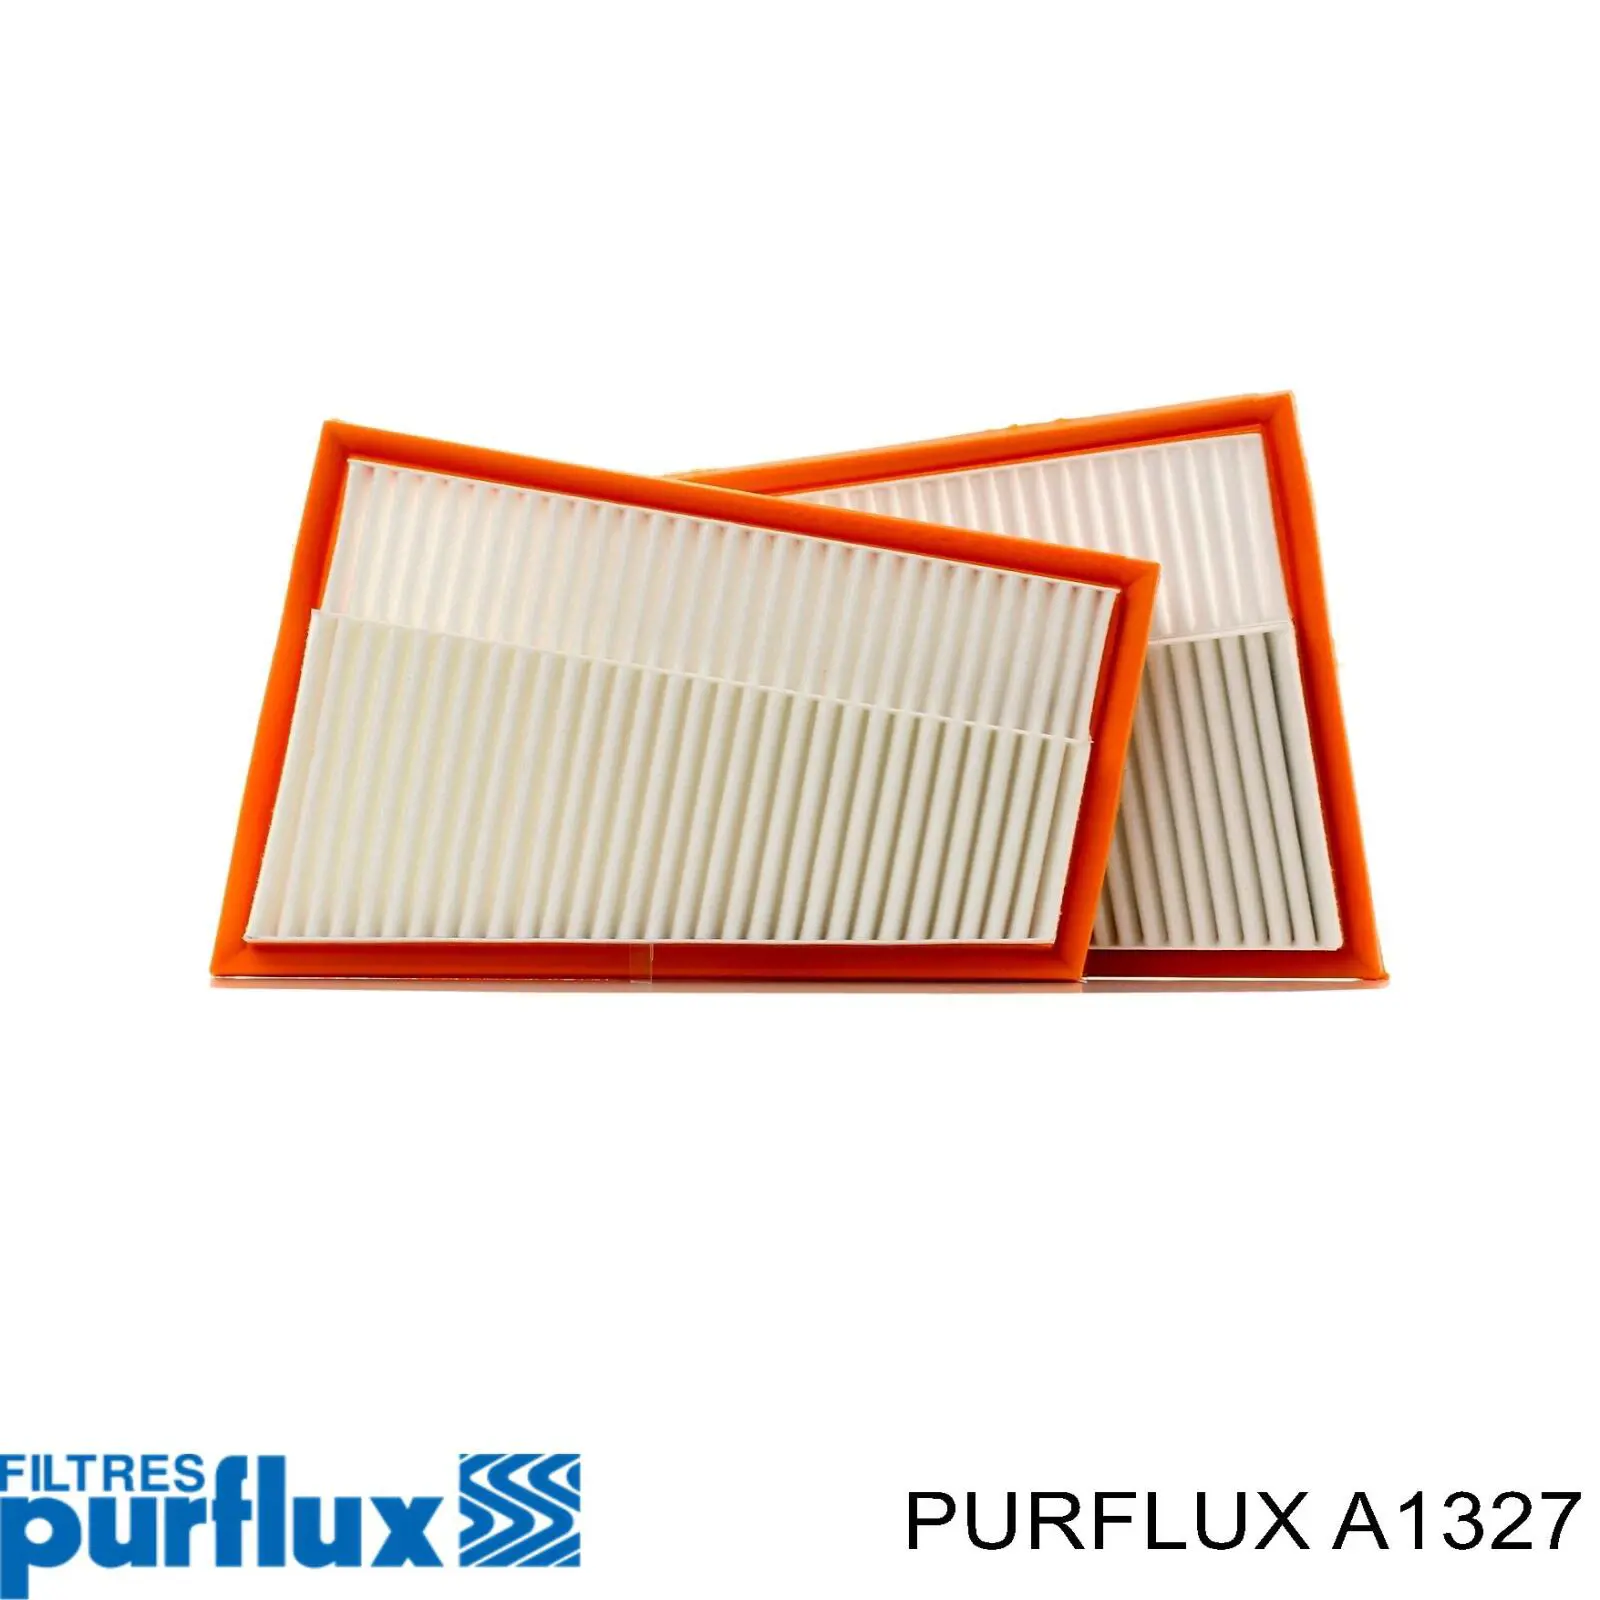 A1327 Purflux filtro de aire